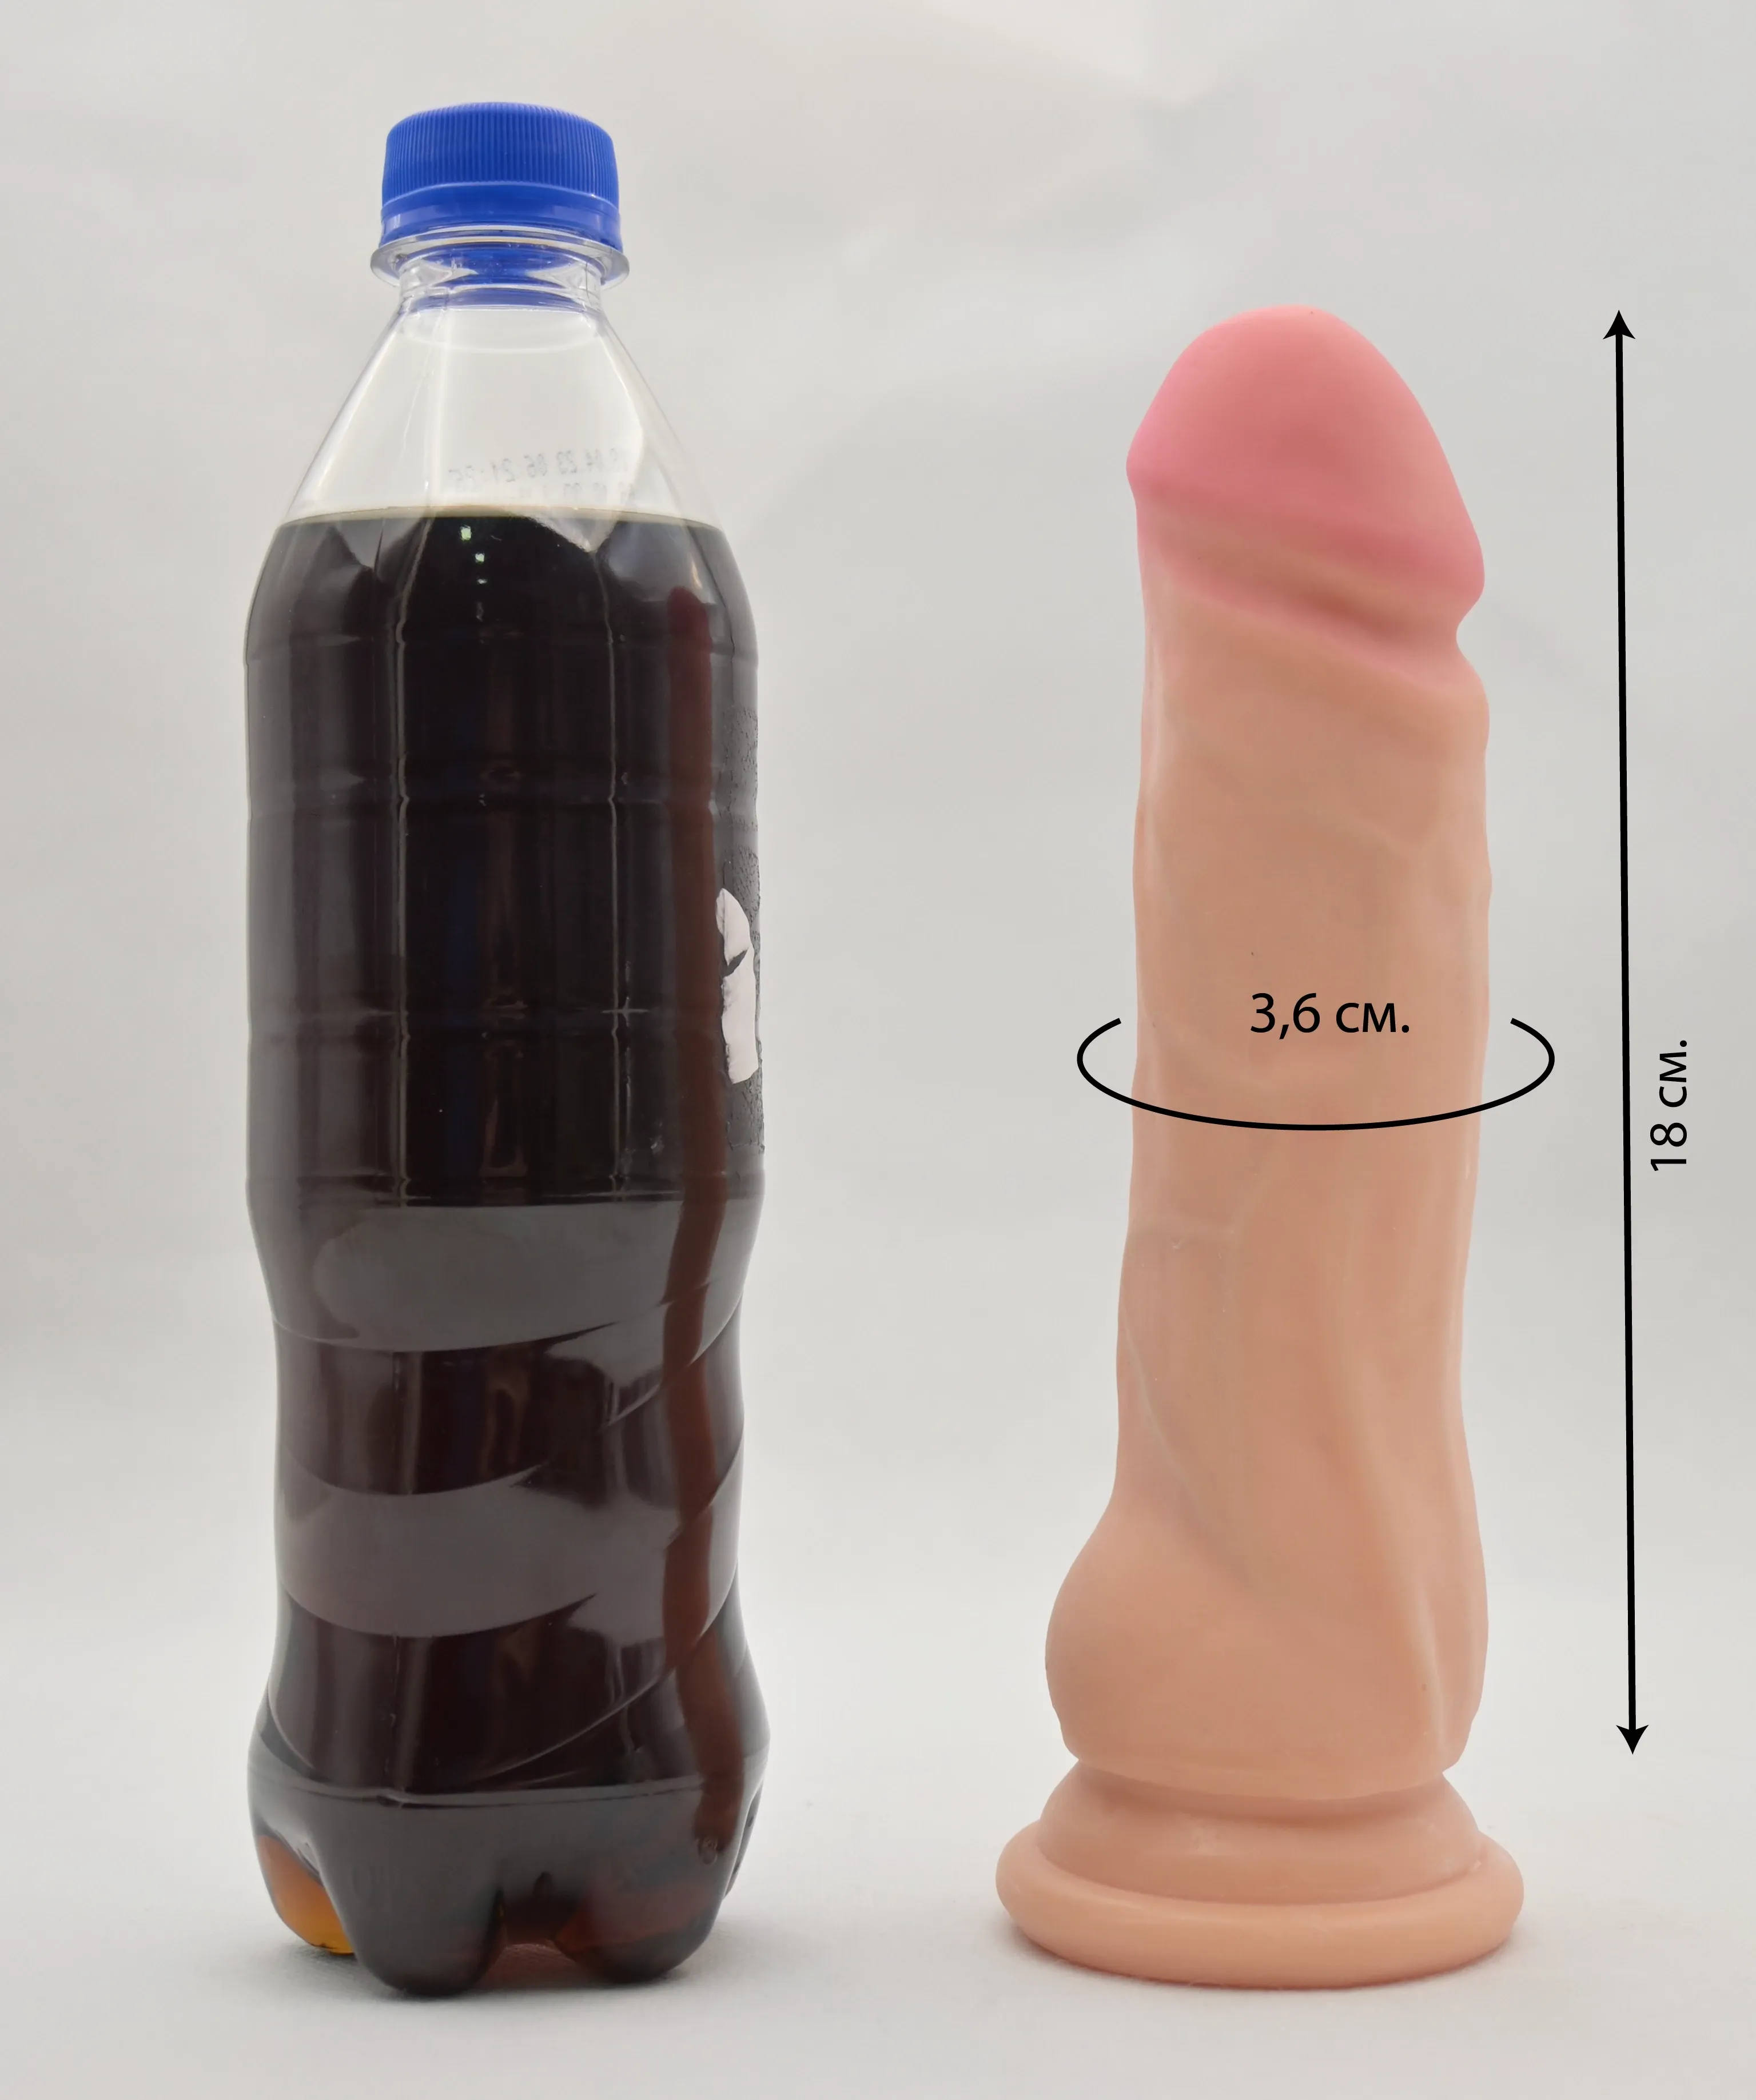 Размеры фаллоса Real Stick Richard и сравнение с бутылкой